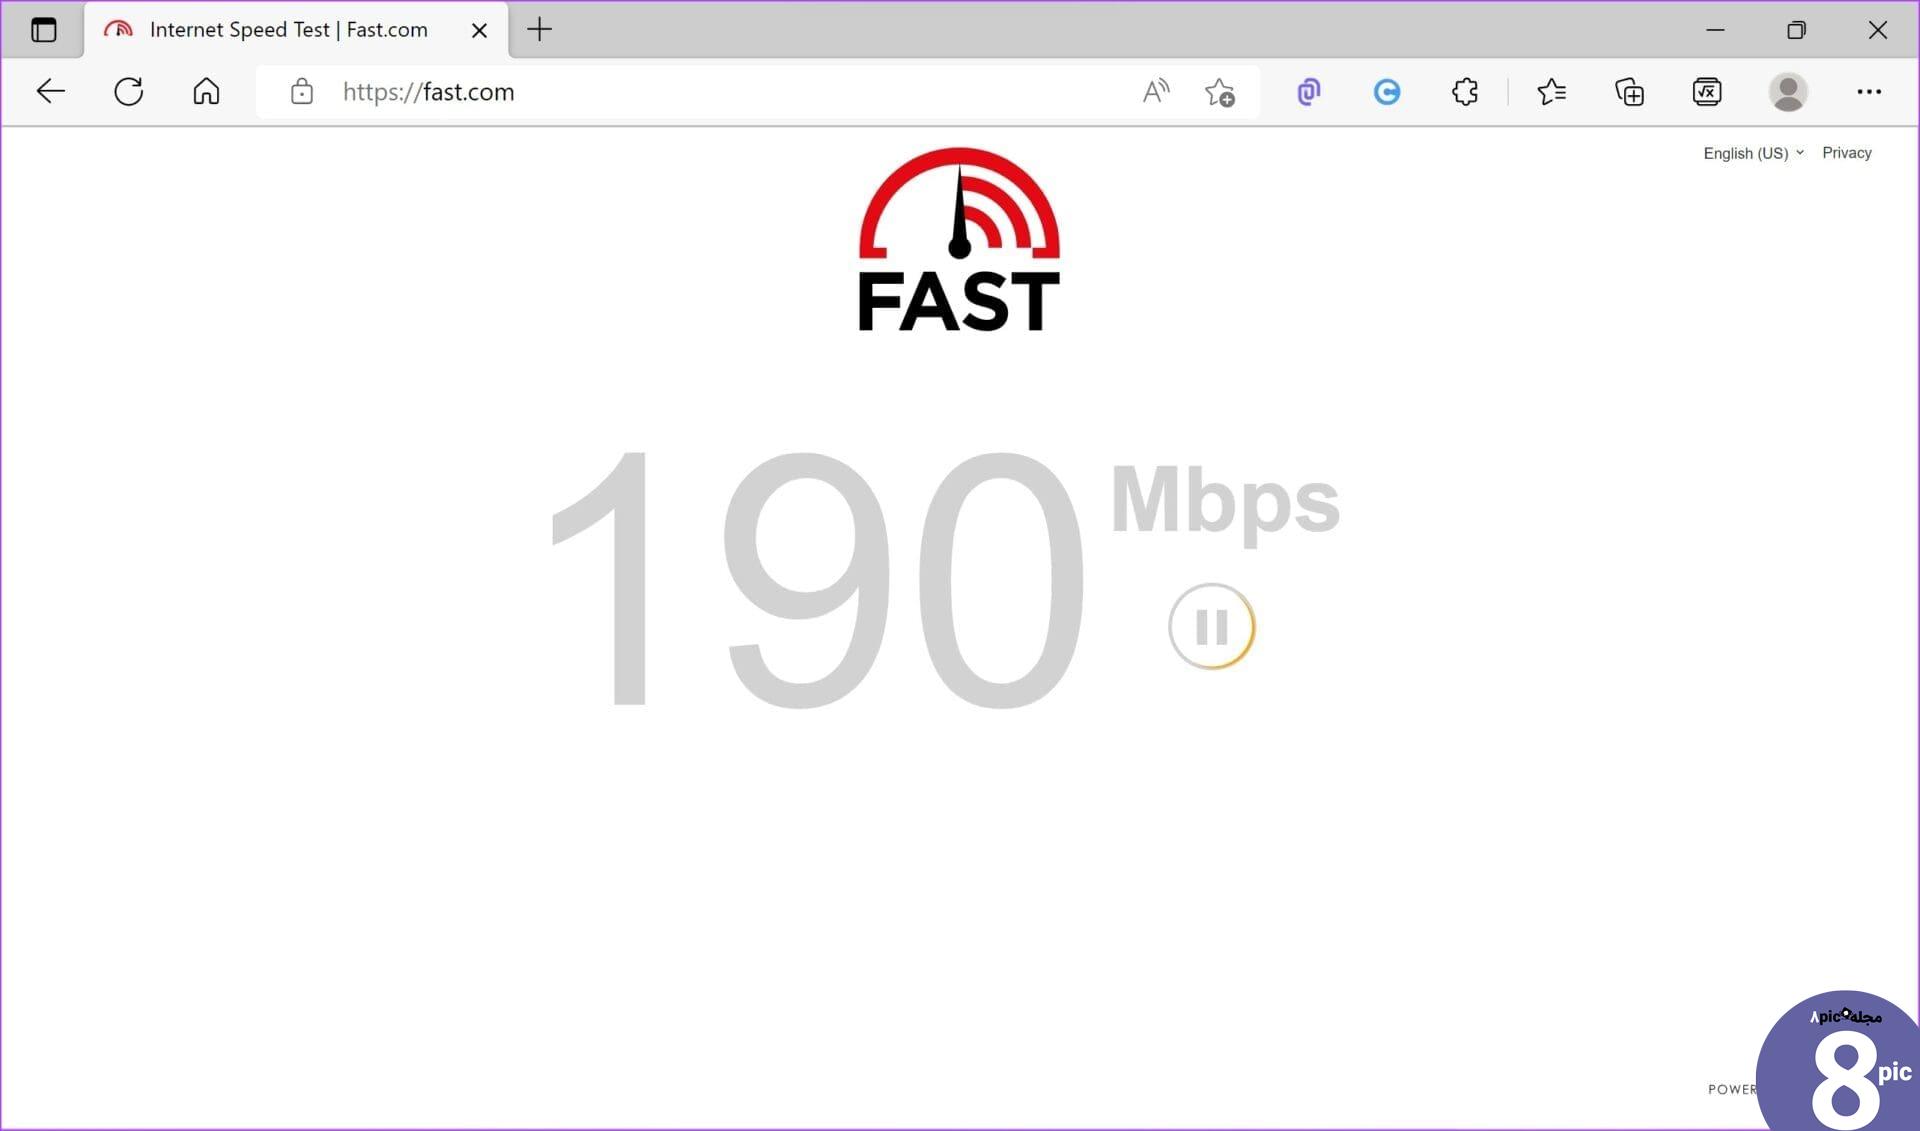 بررسی سرعت اینترنت Fast.com 1